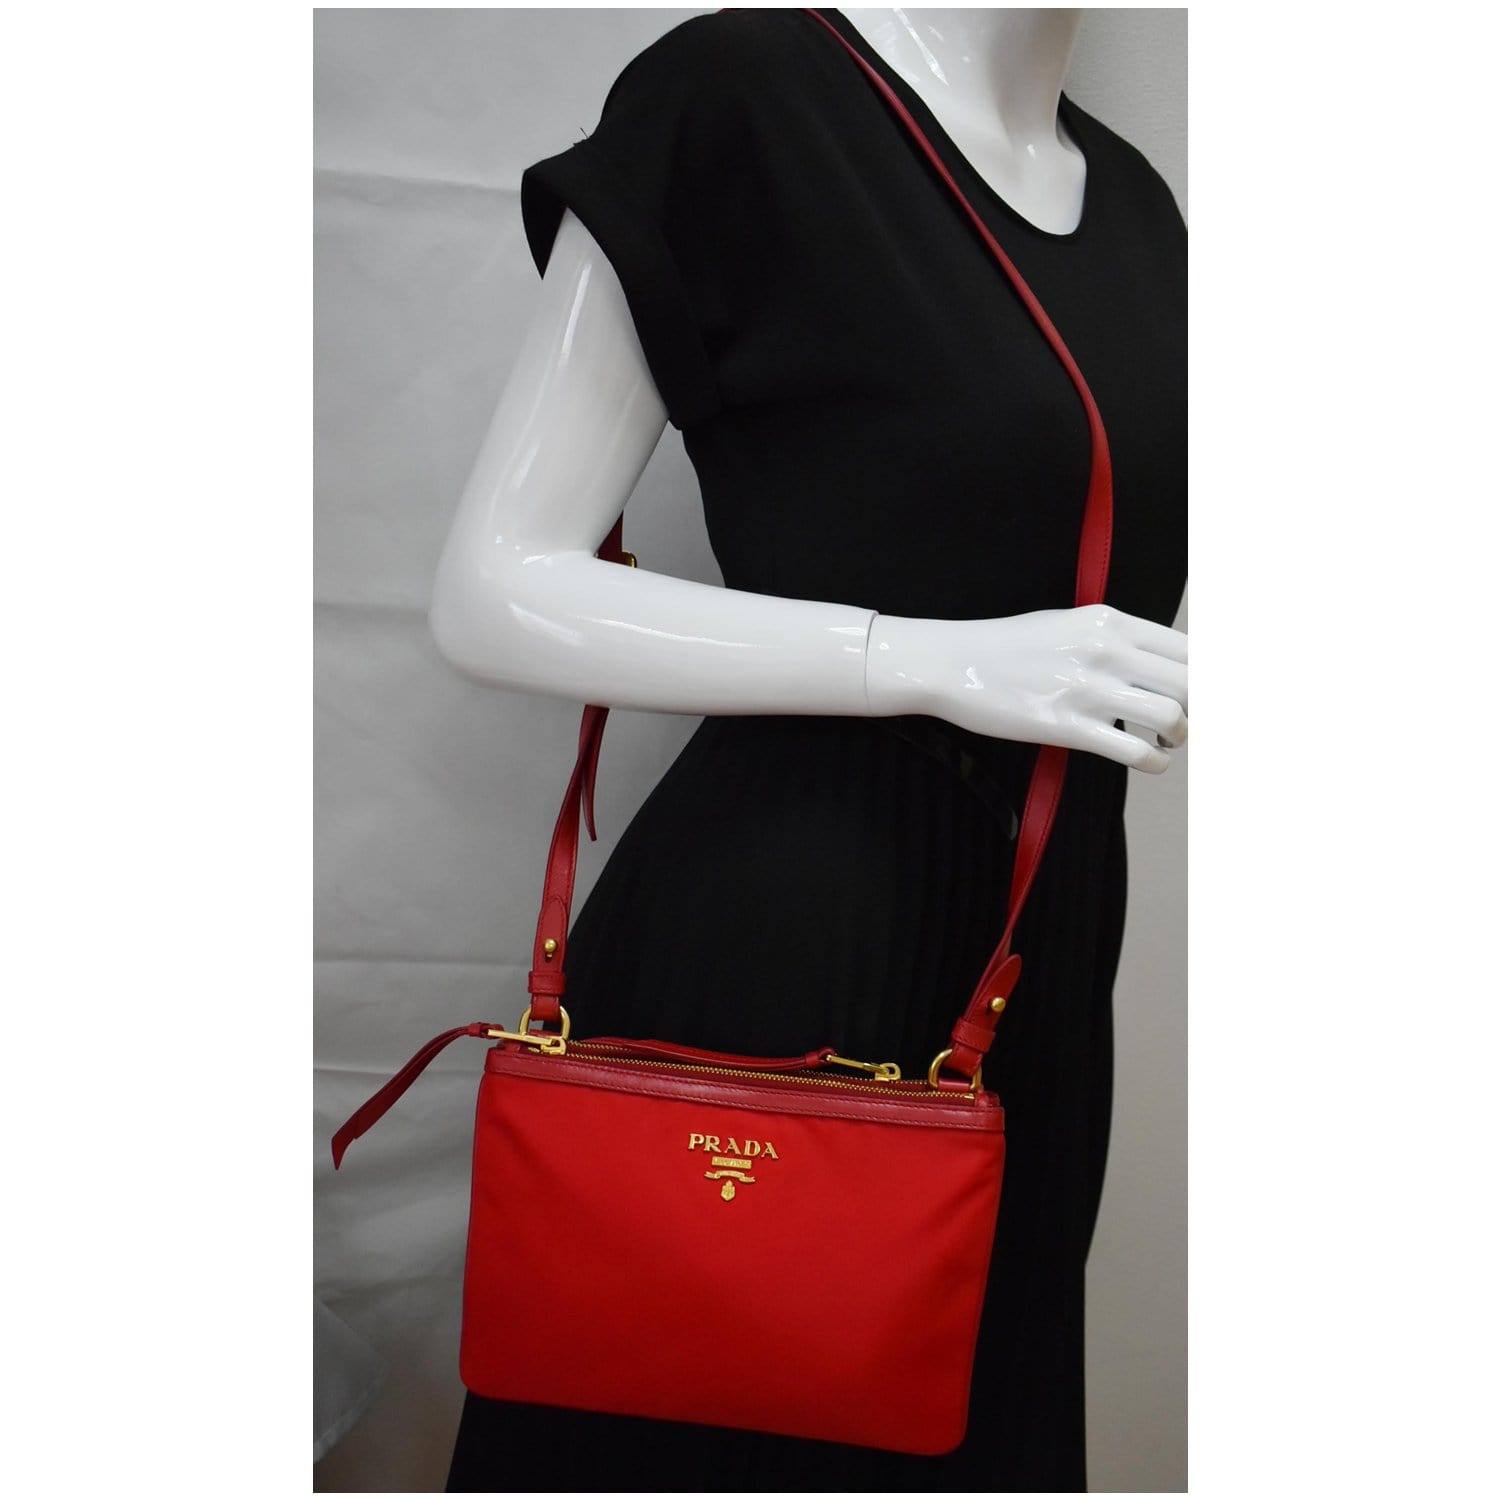 Prada Turnlock Satchel Bicolor Crossbody Bag in Black, White & Red